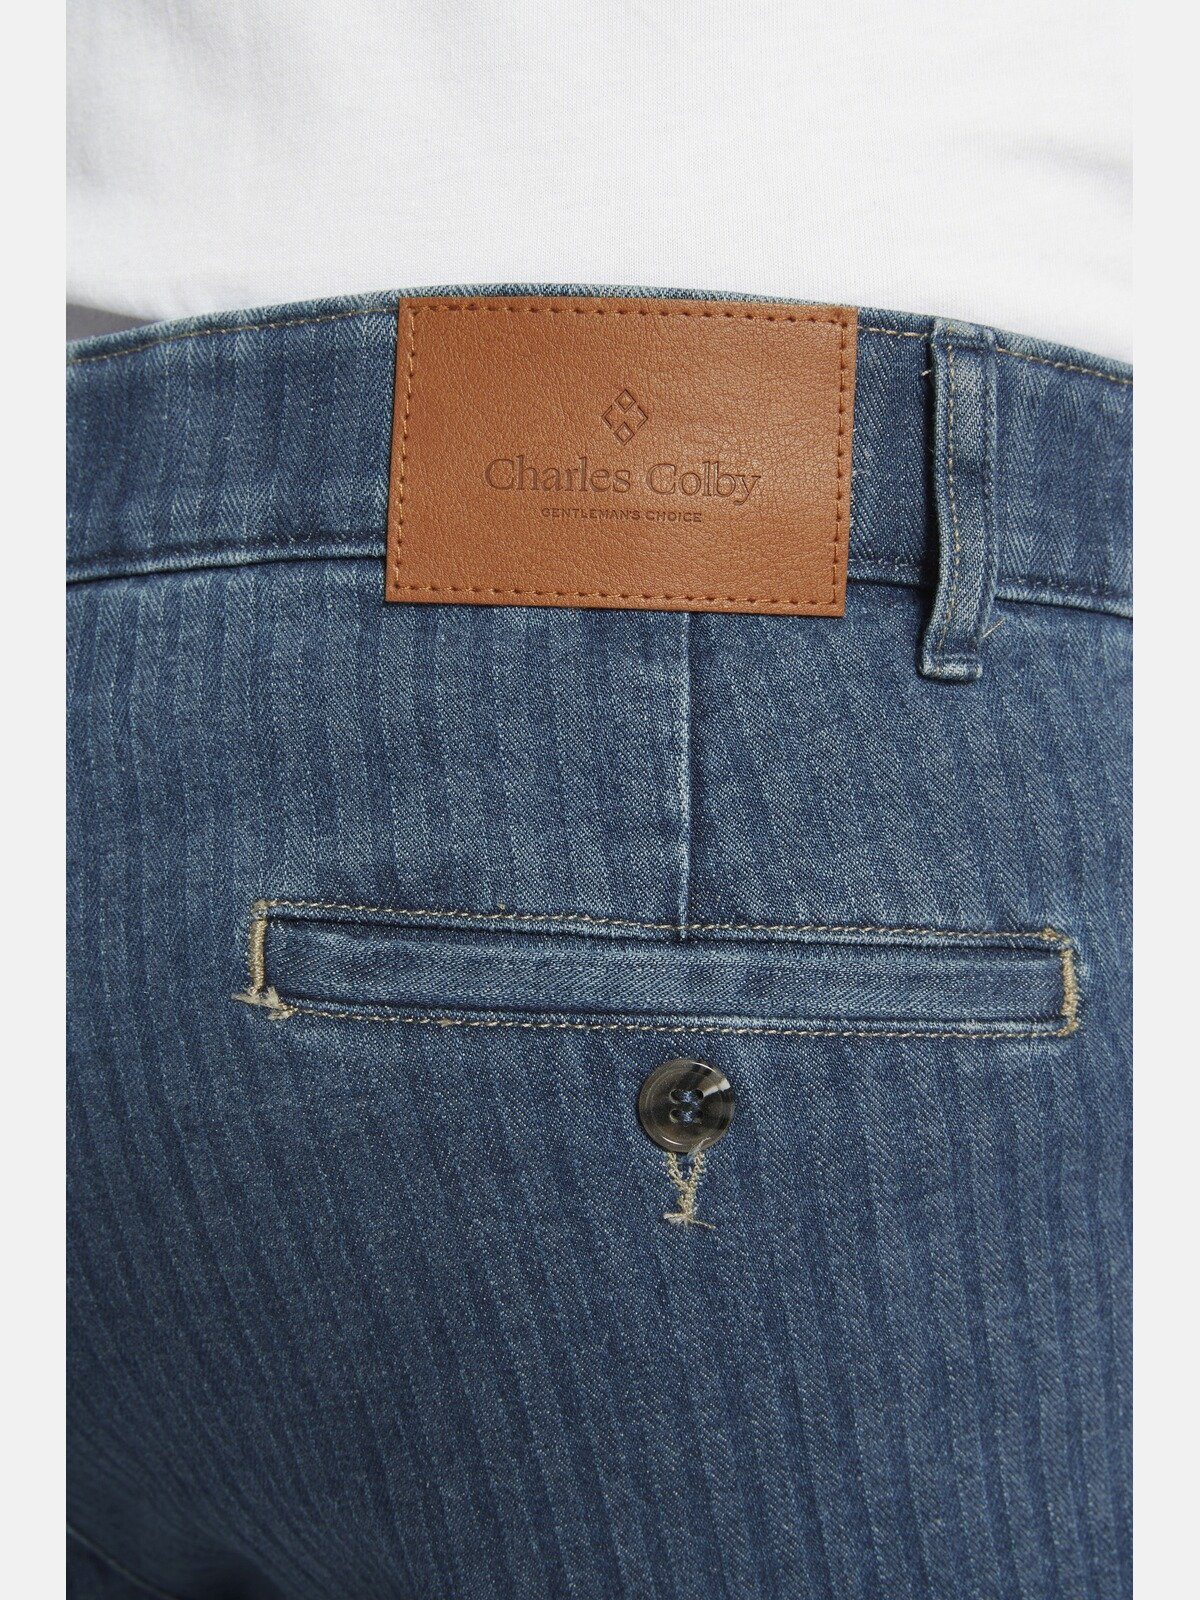 BARON Charles CONNLA 5-Pocket-Jeans Taschen mit Colby fünf